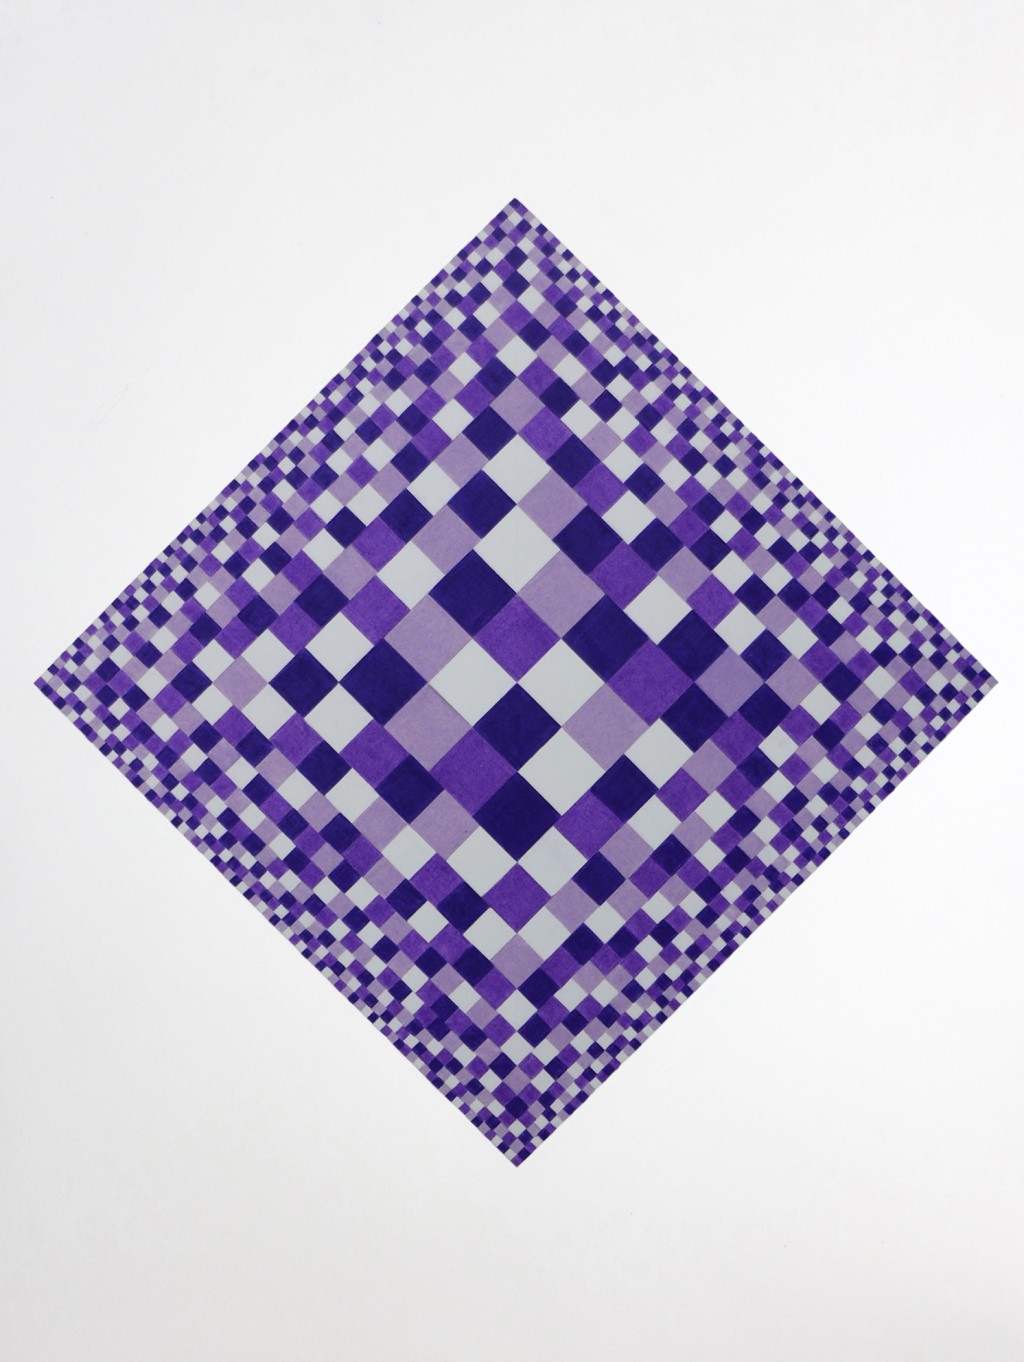 7-artwork-purple-pixels-colored-pencils